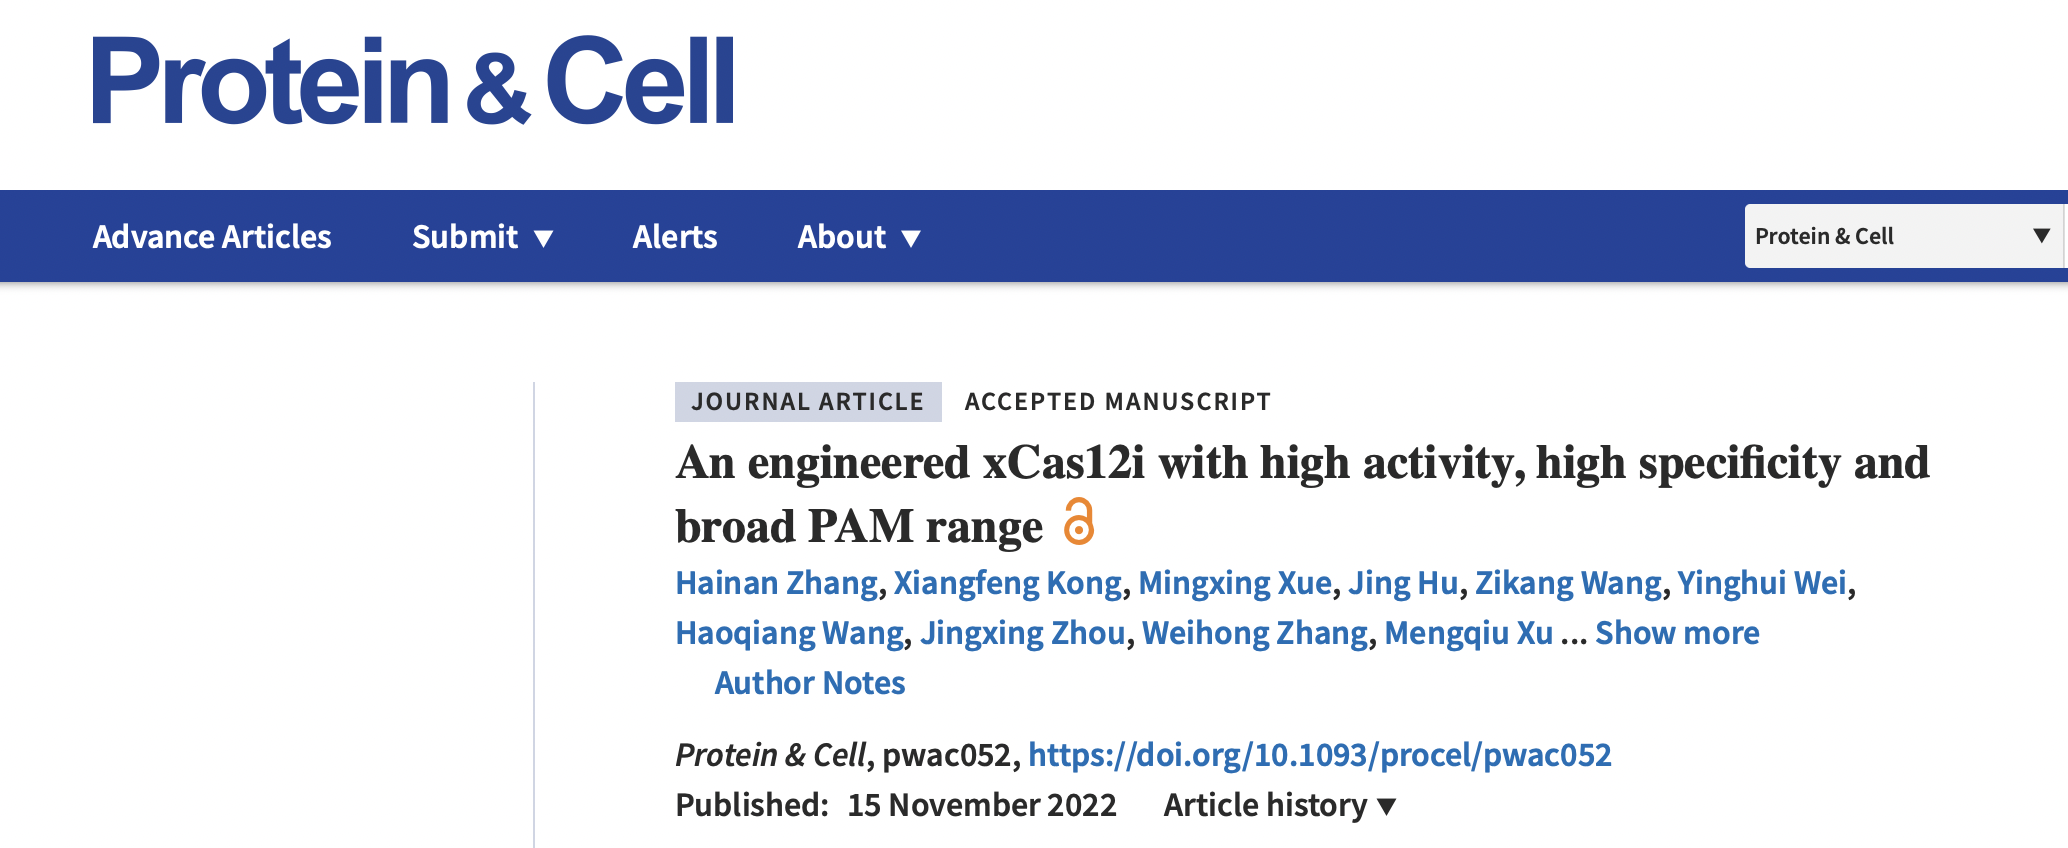 辉大基因高保真版hfCas12Max推出 高效靶向编辑活性突破Cas12应用瓶颈